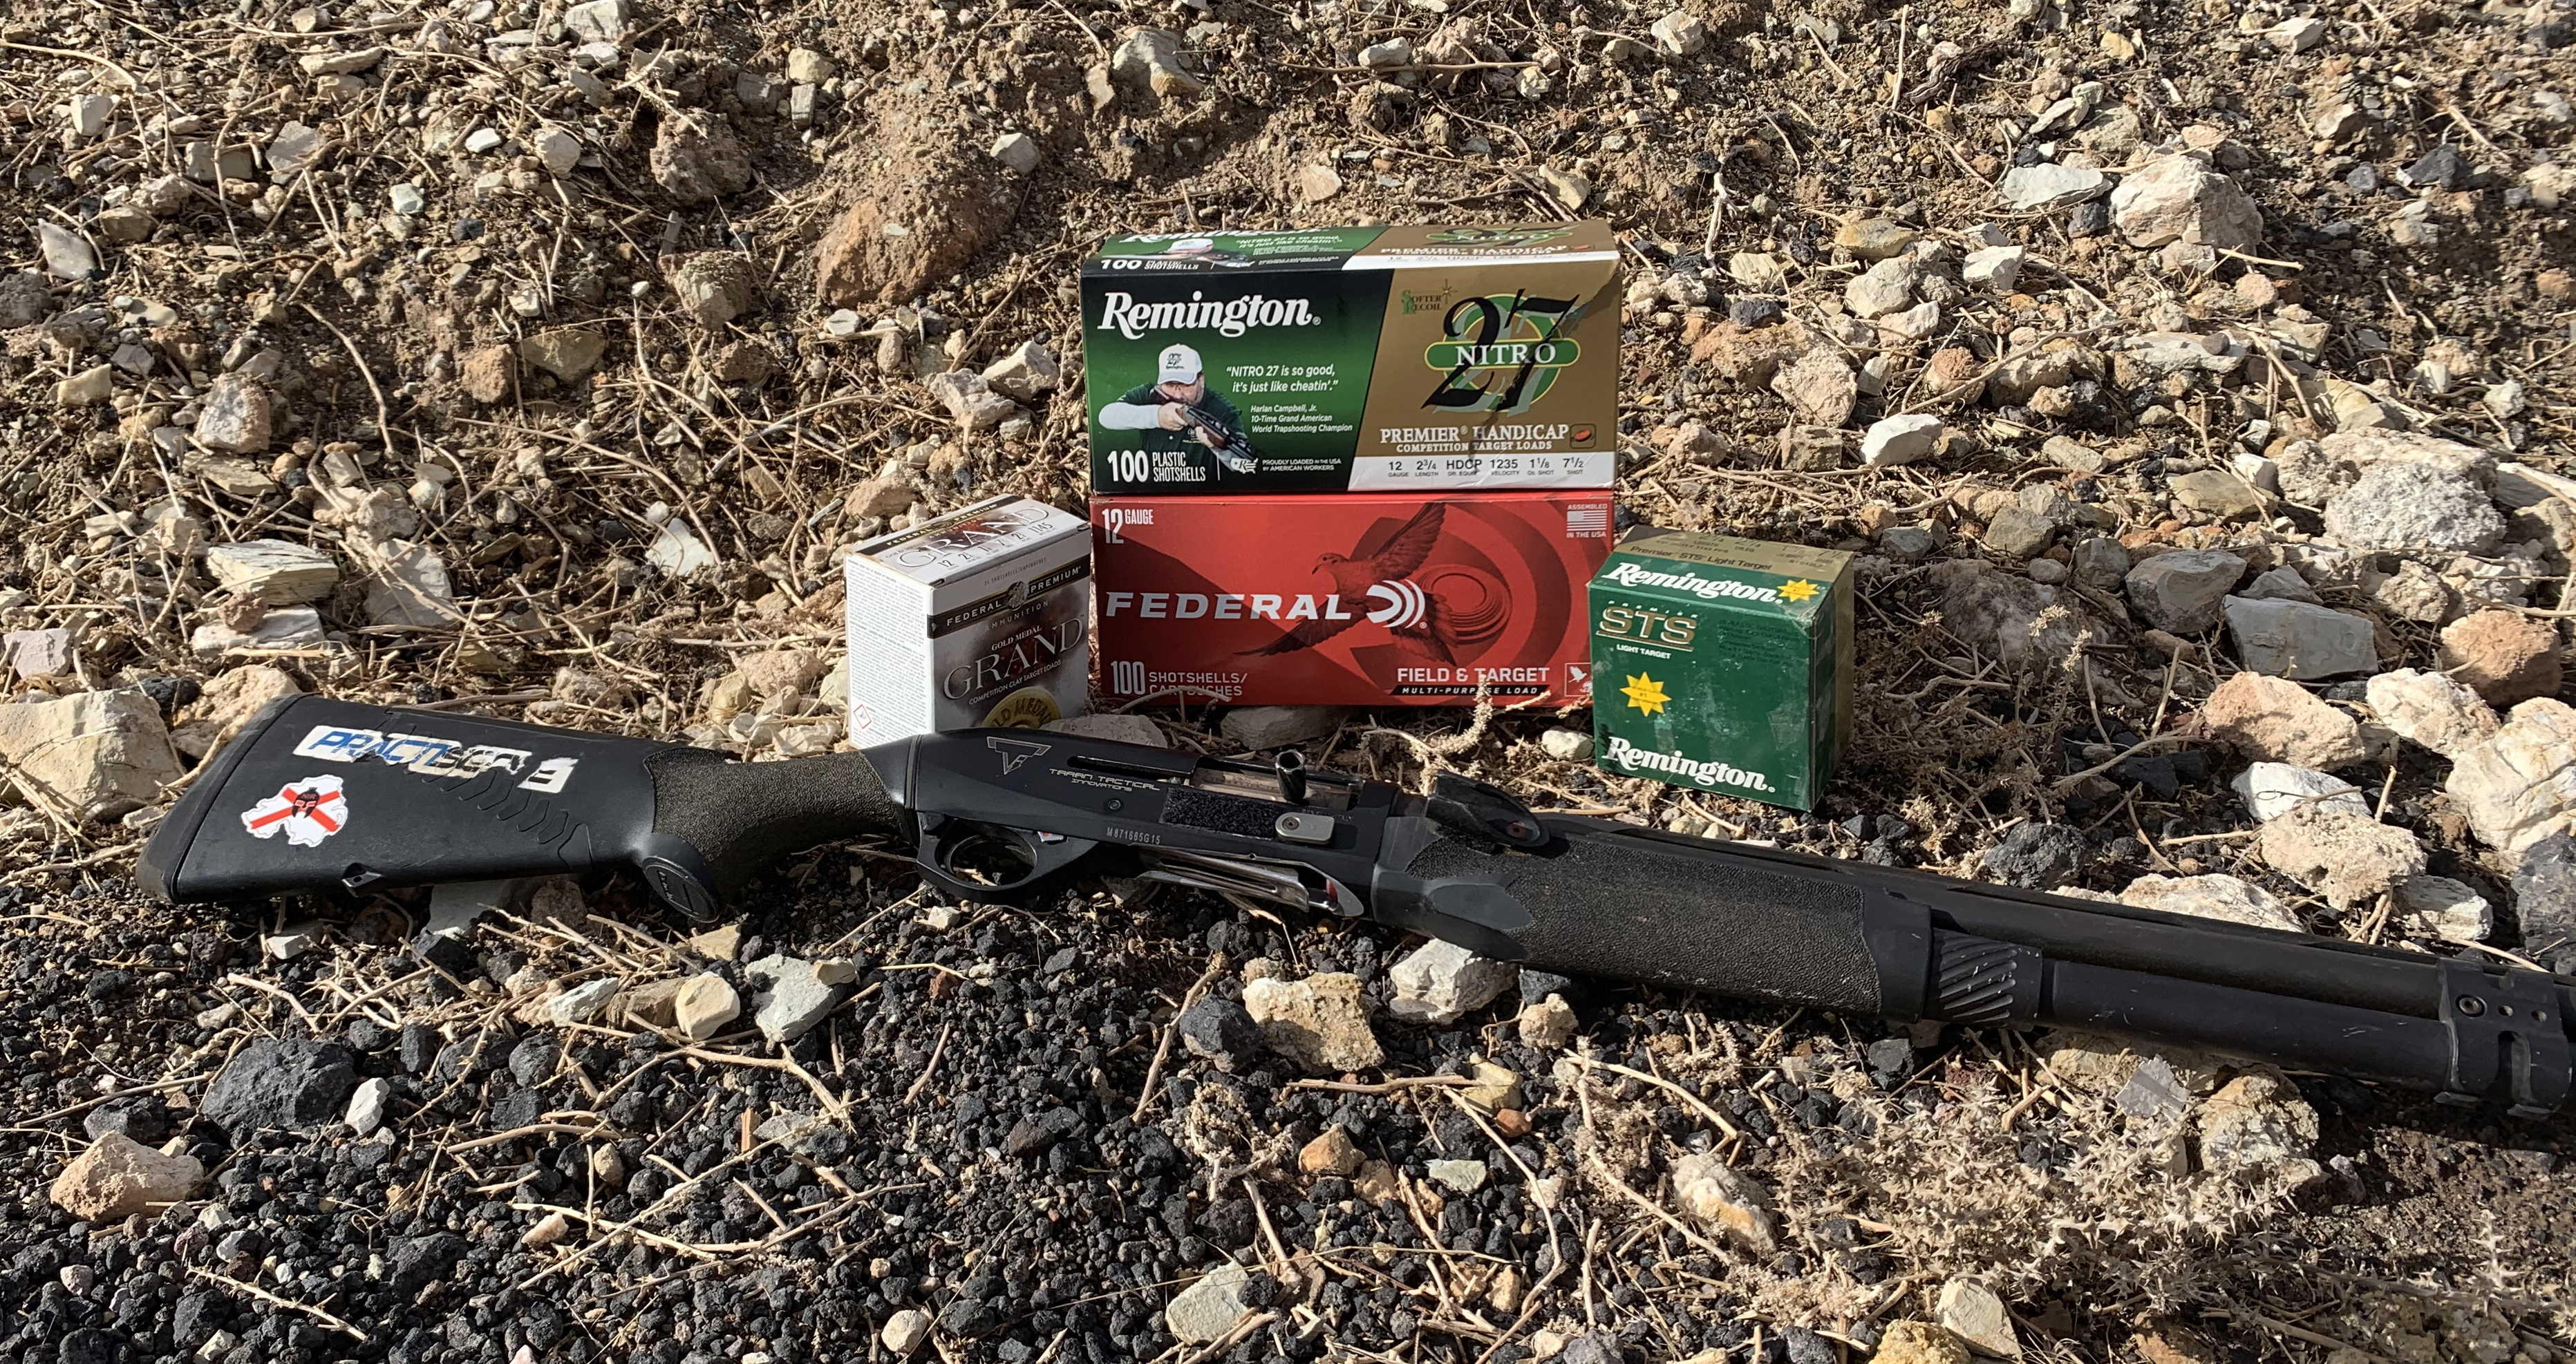 remington gun club target loads review